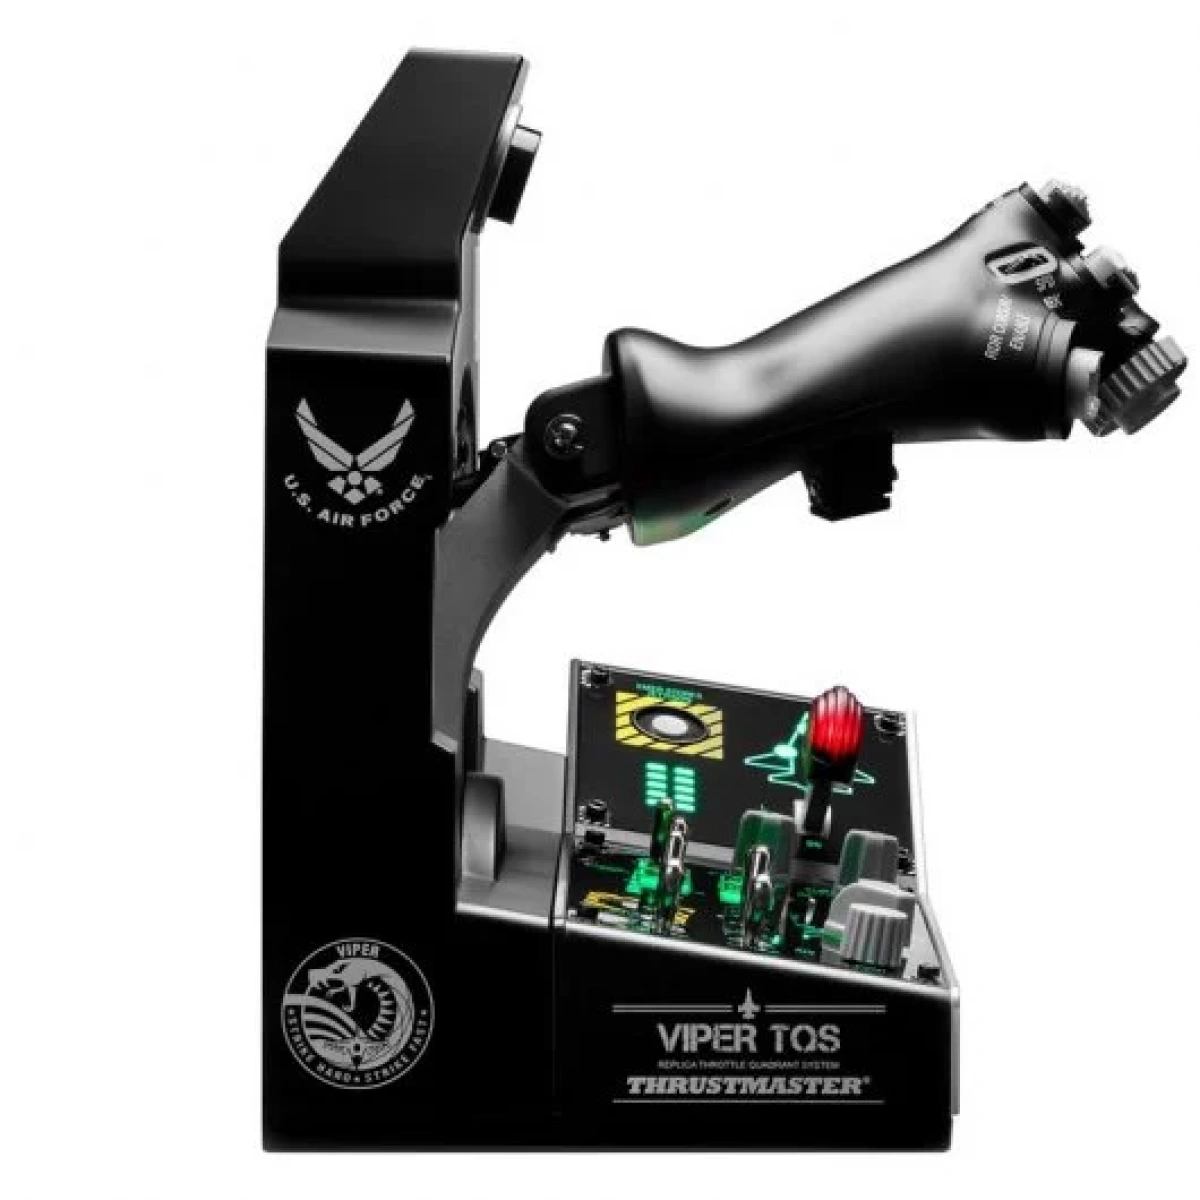 4939 thrustmaster viper tqs mission pack sistema de cuadrante de aceleracion del viper panel de control especificaciones